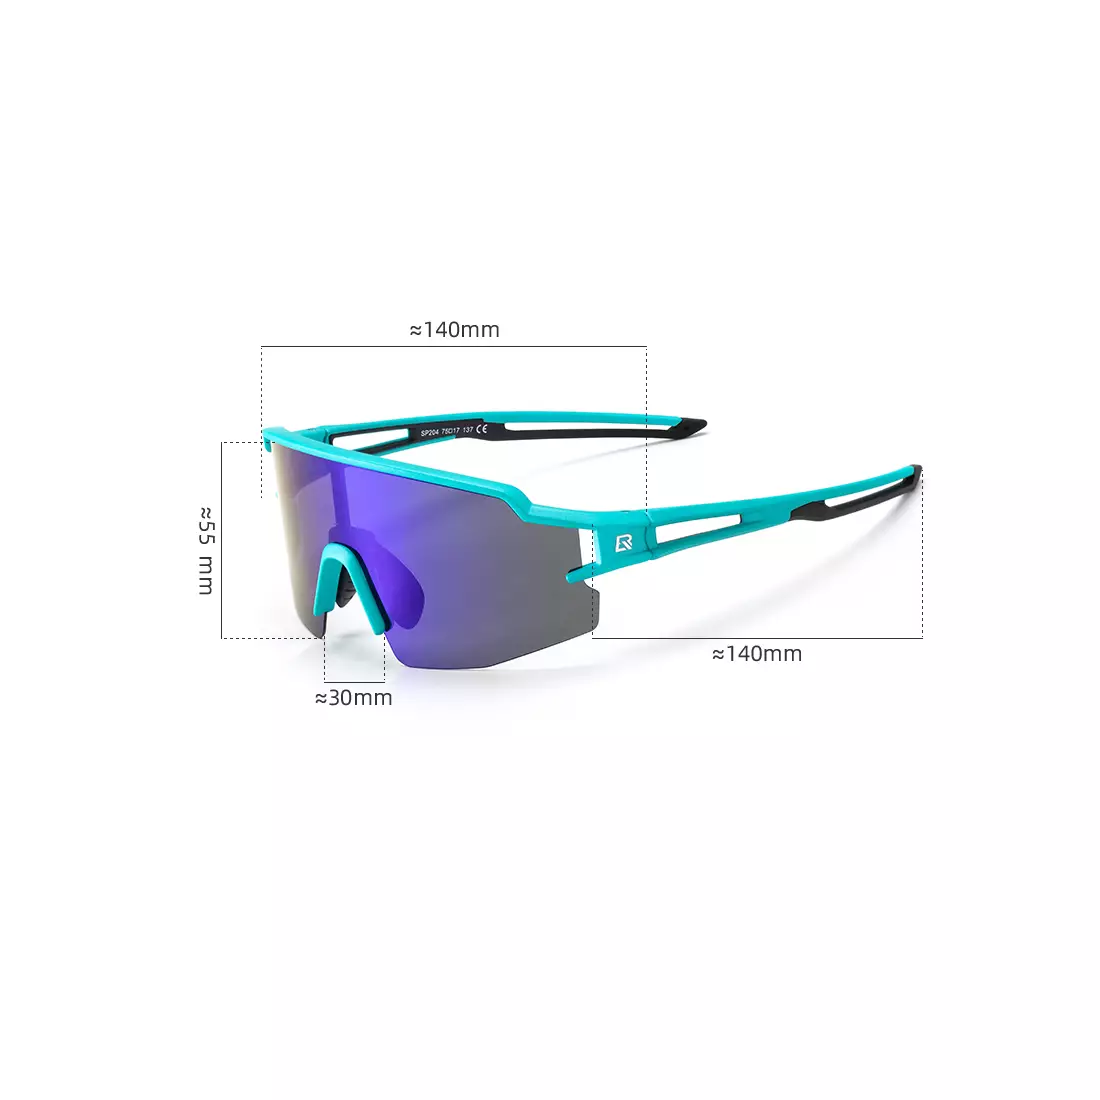 Rockbros okulary sportowe / rowerowe z polaryzacją 10176